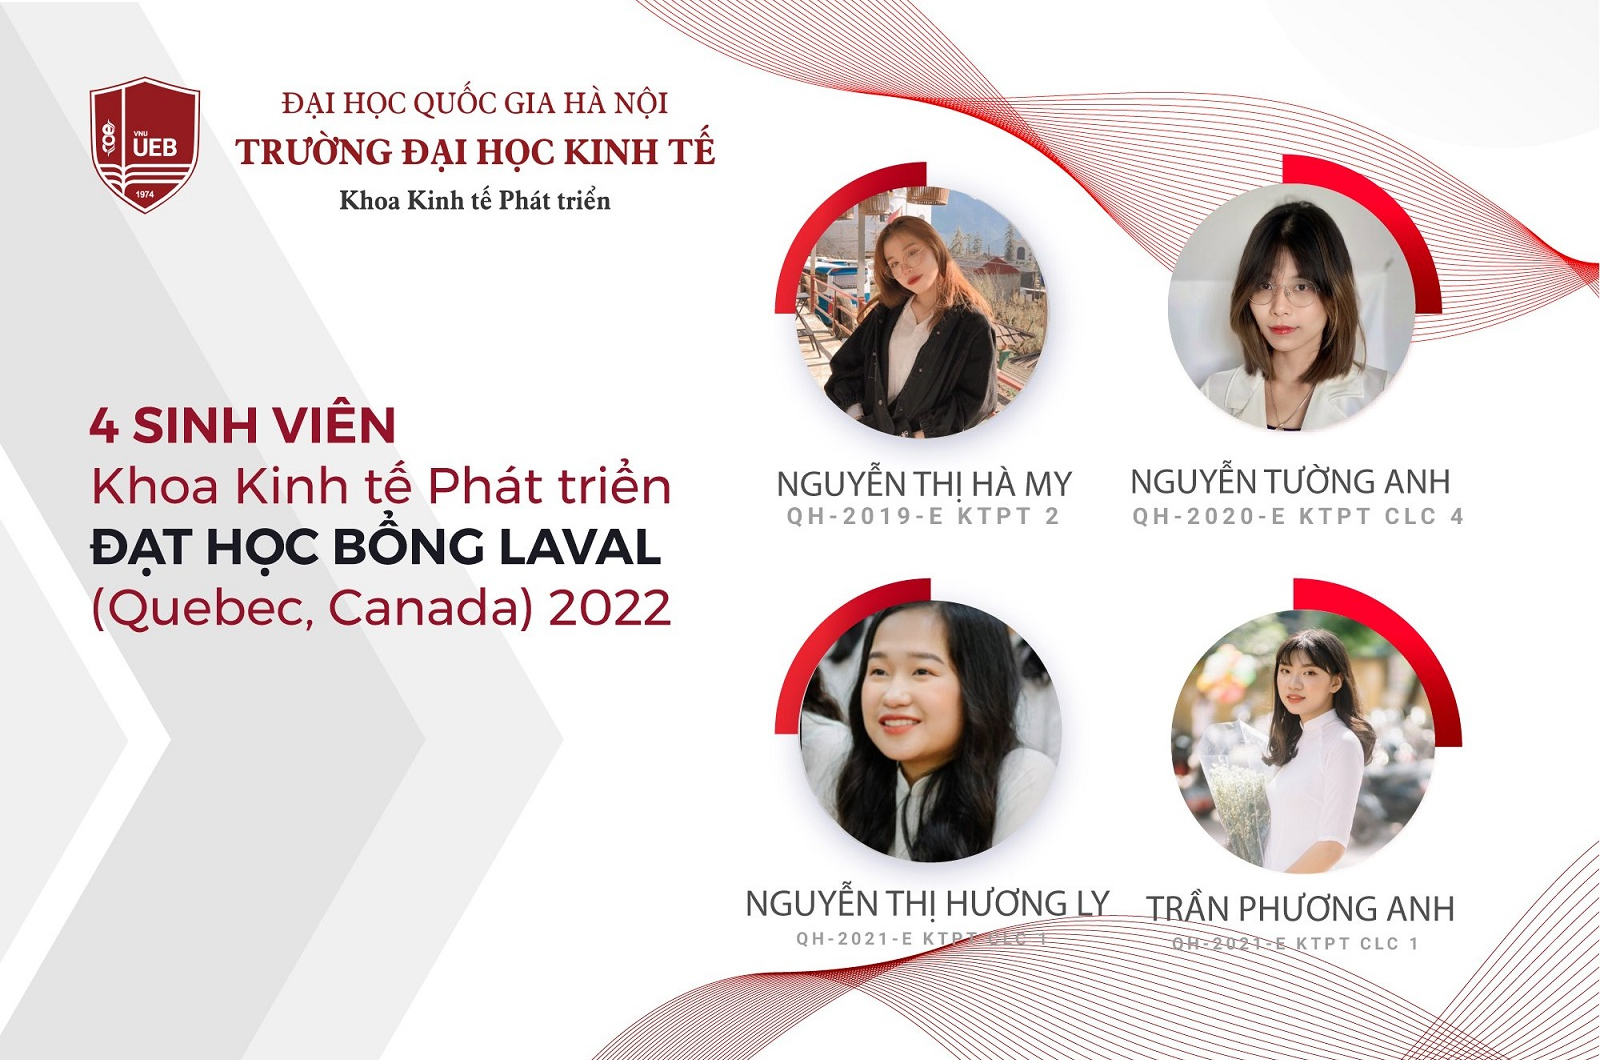 Sinh viên Khoa Kinh tế Phát triển đạt học bổng LAVAL (Quebec, Canada) 2022